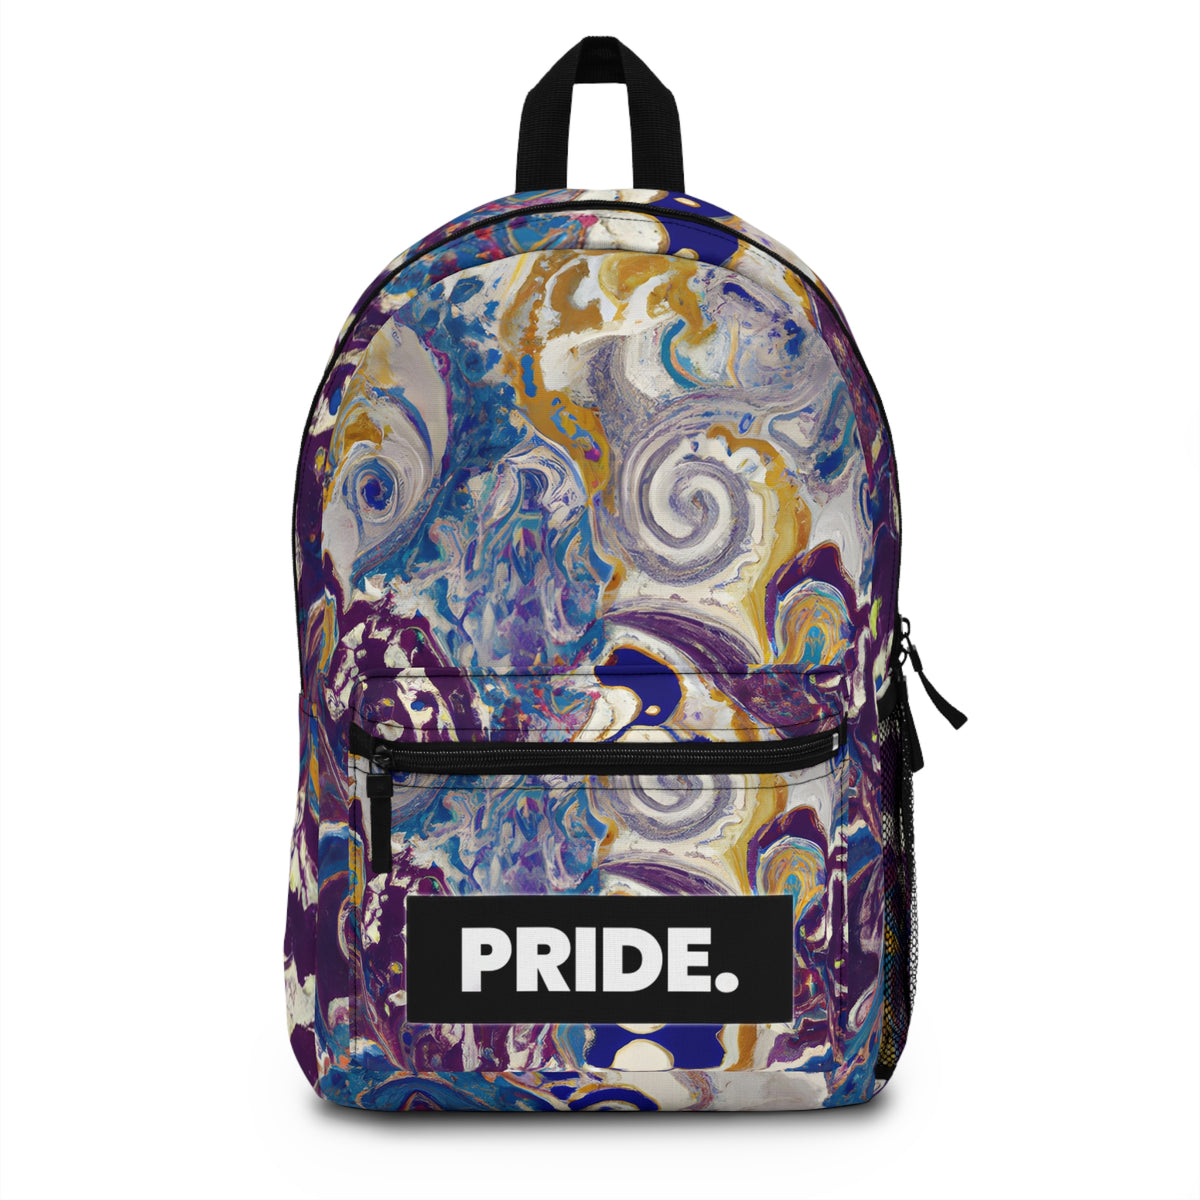 DazzleGalaxy - Gay Pride Backpack